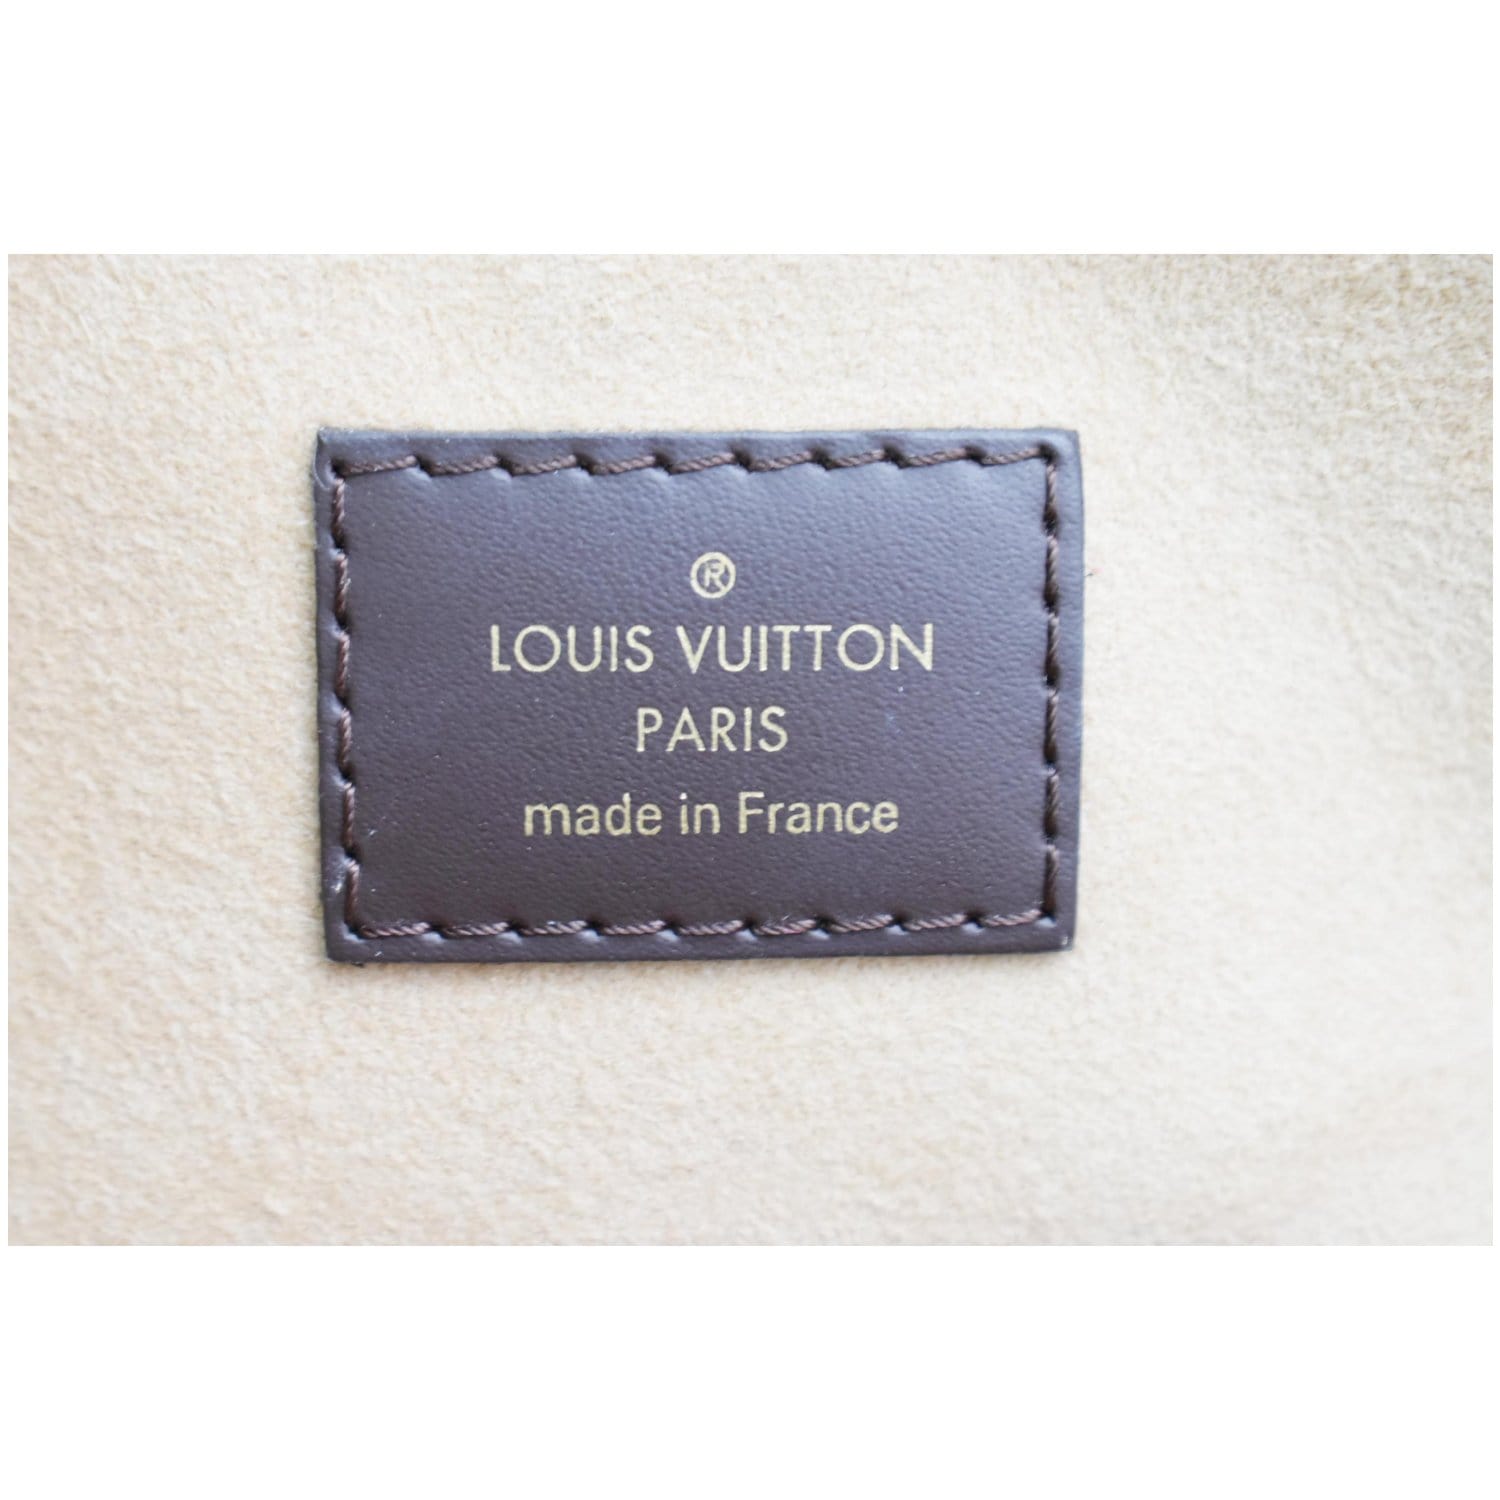 Louis Vuitton, Normandy Damier Ebene